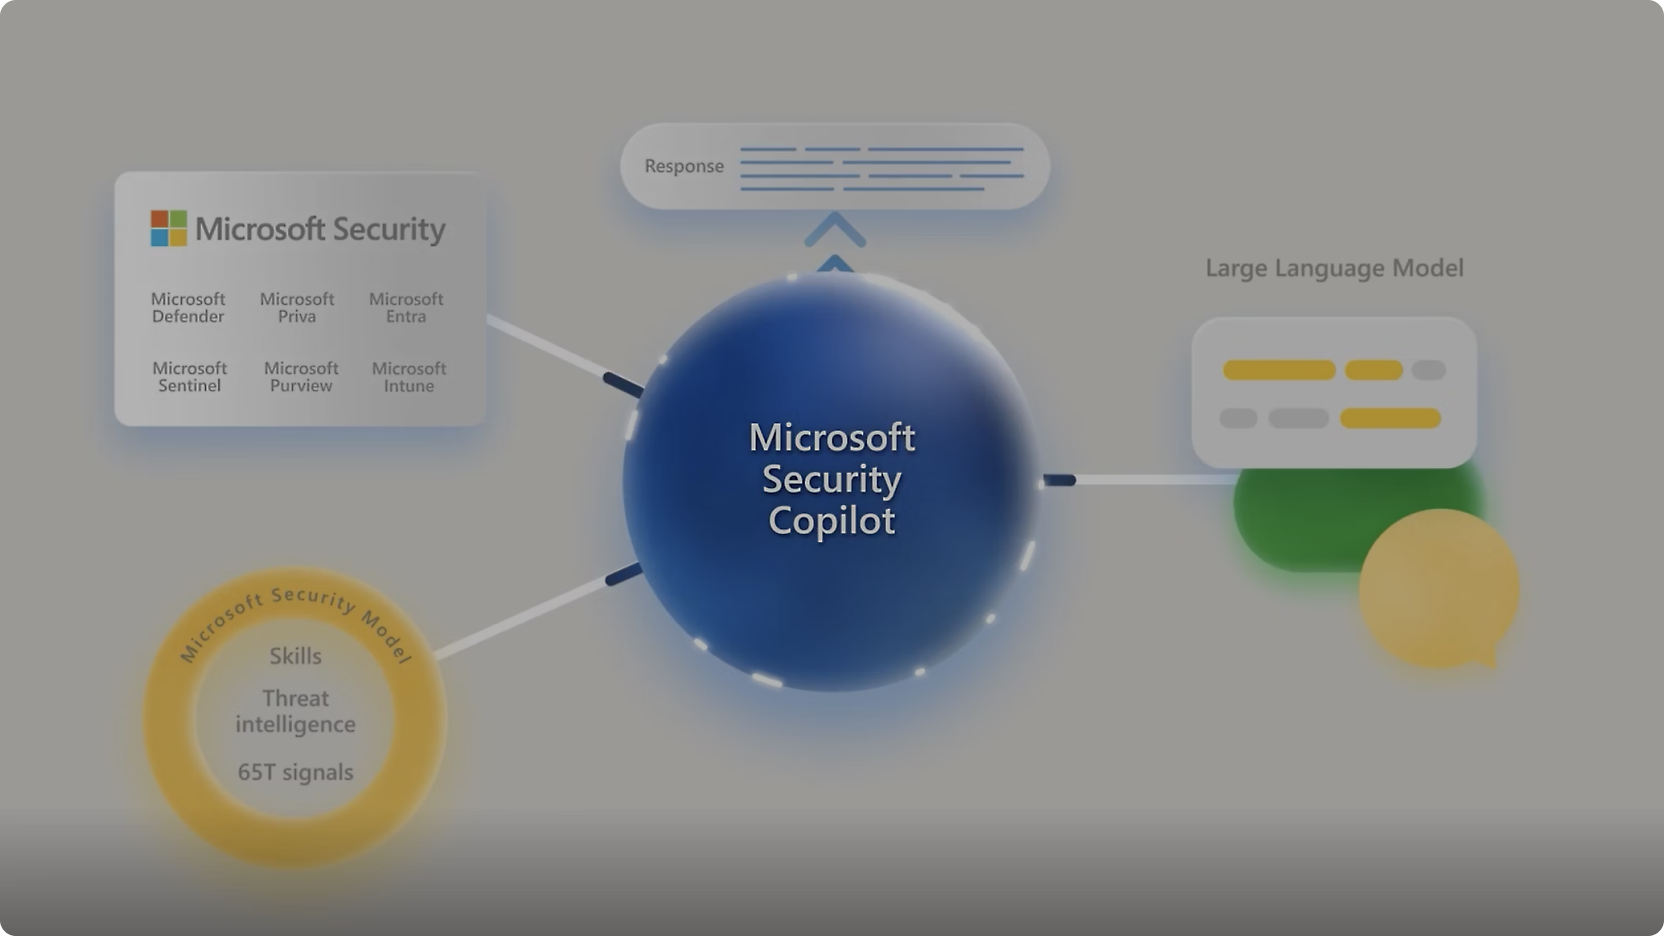 Diagrama que muestra "Microsoft Copilot para seguridad" en el centro con conexiones a varias herramientas de seguridad de Microsoft